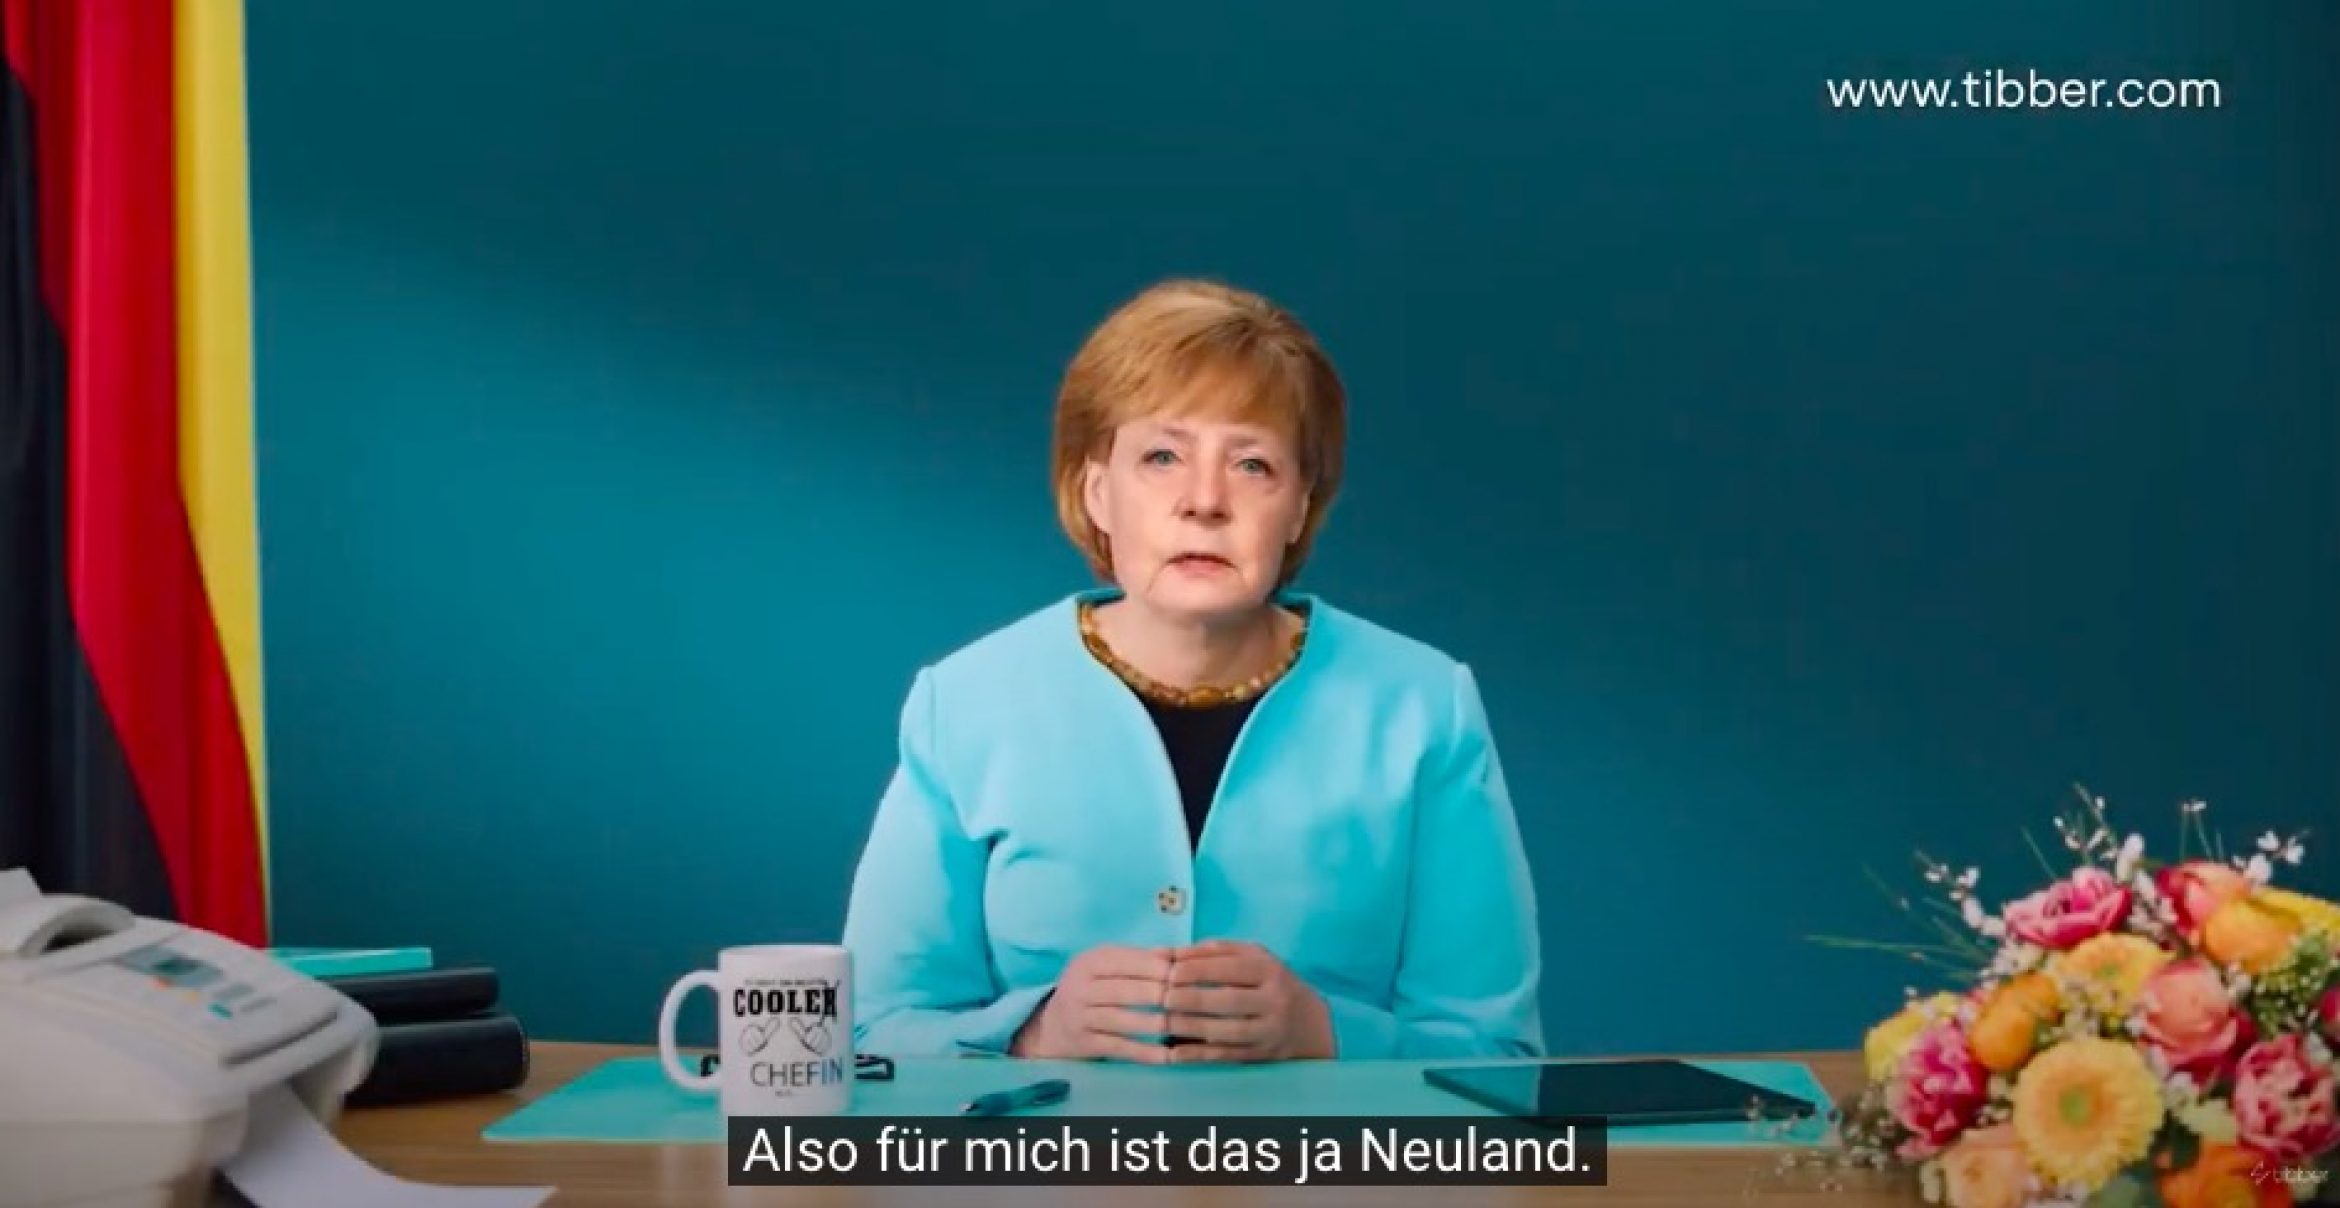 Diese Deepfake-Werbung mit Angela Merkel hat einen Preis gewonnen